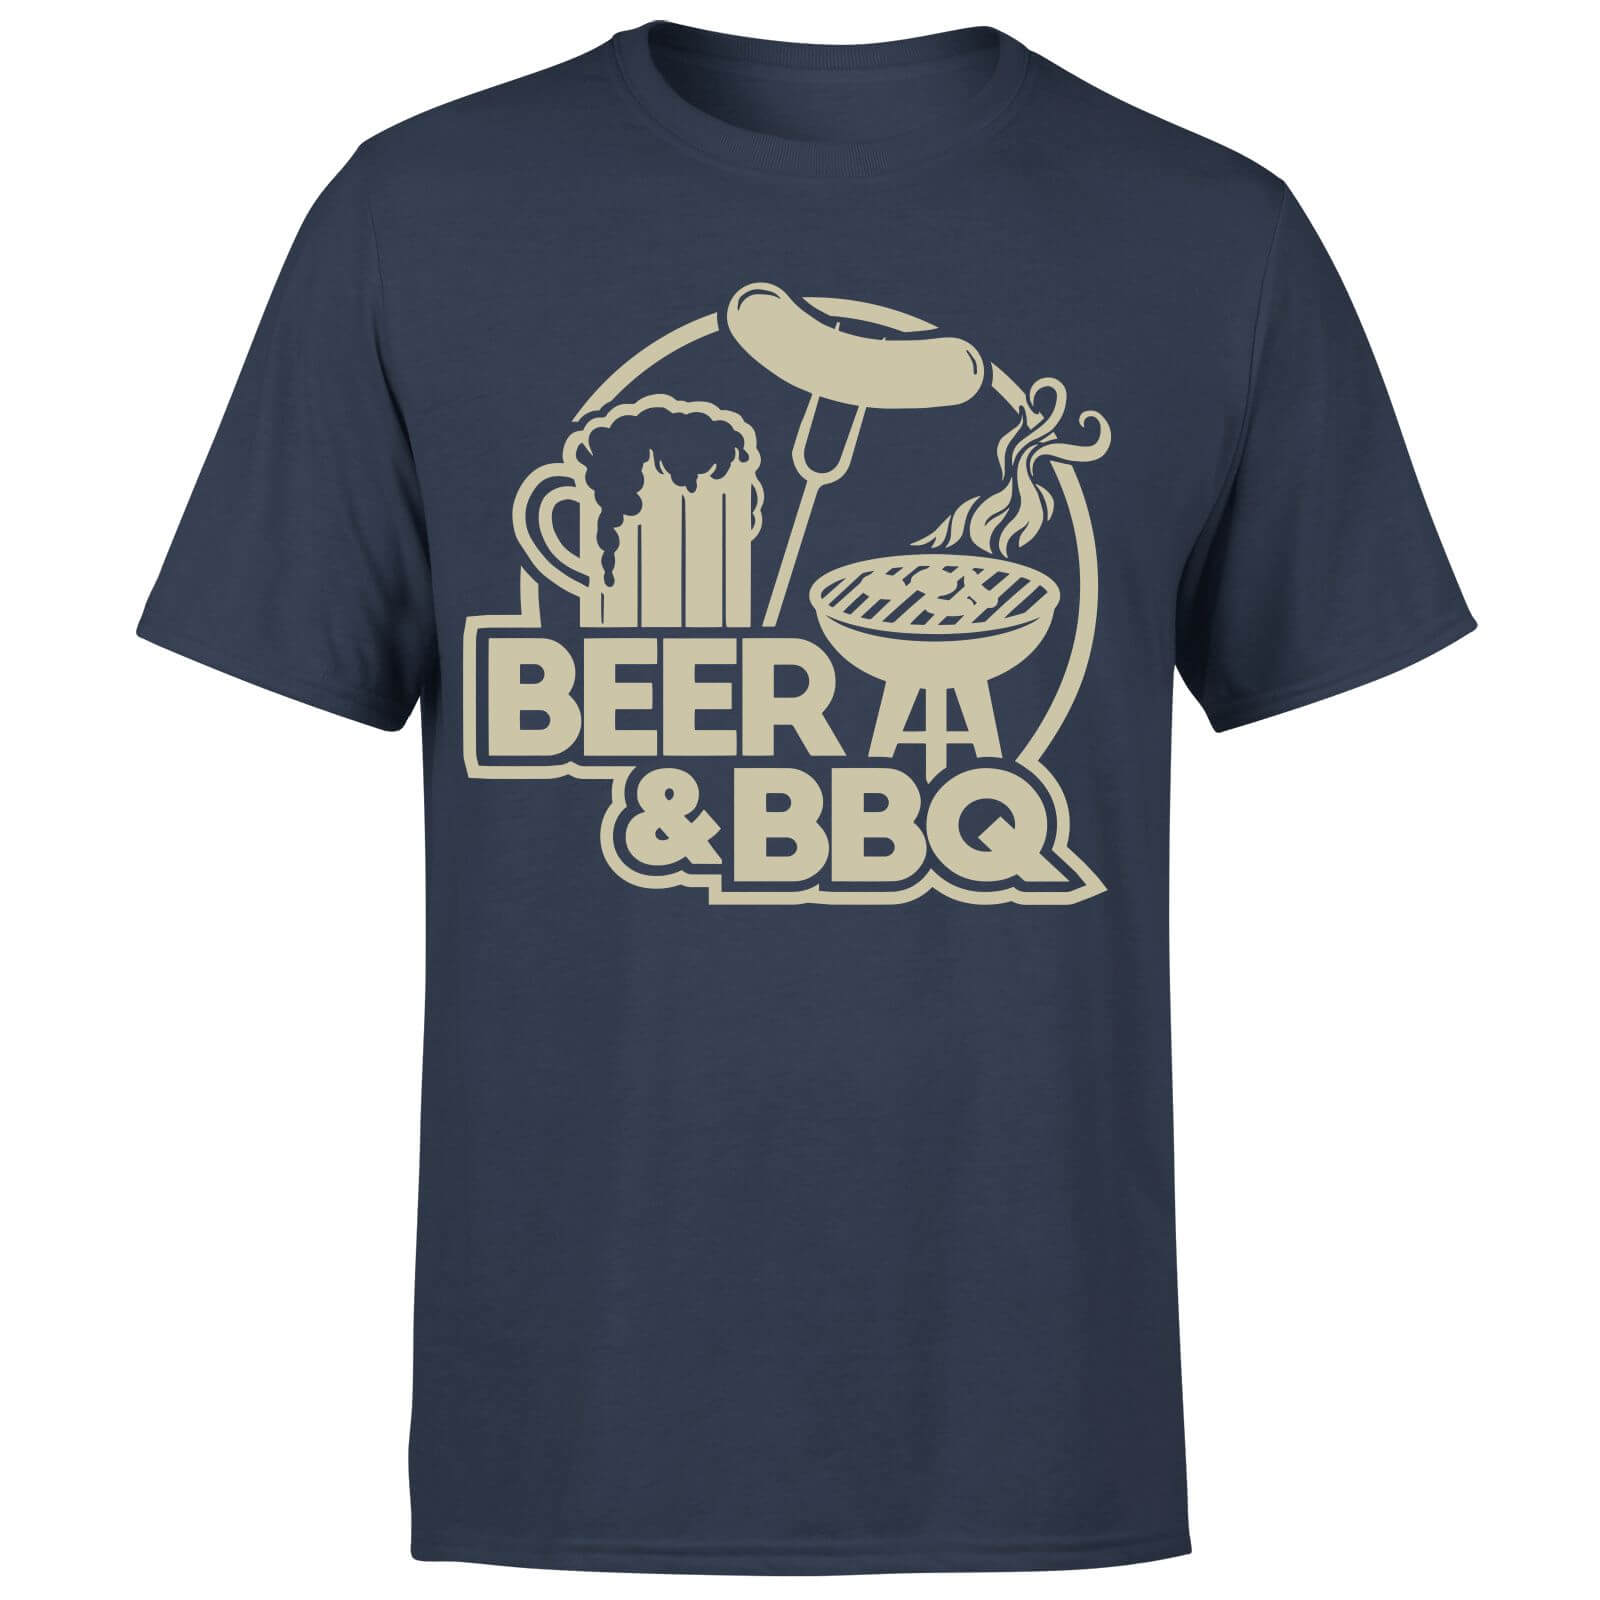 Beer & BBQ Men's T-Shirt - Navy - L